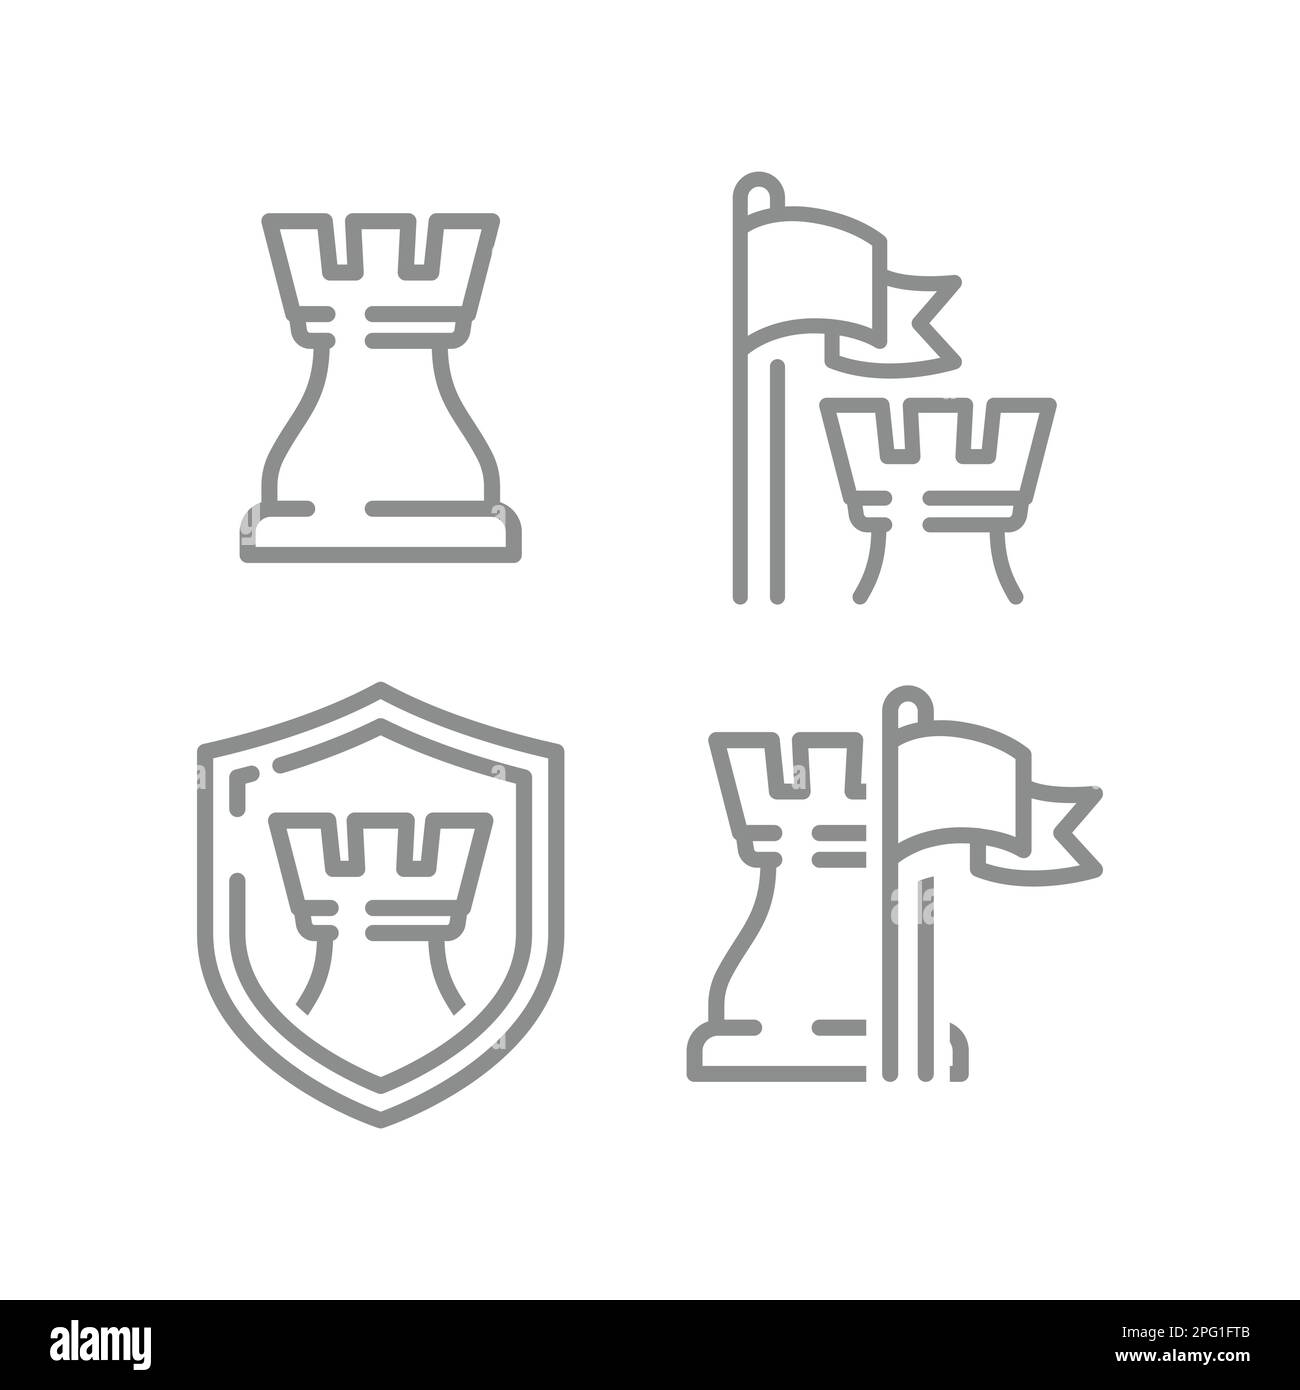 Schachkönigssymbol, Flagge und Schild. Geschützte, geschützte und sichere Symbole für Konzeptlinien. Stock Vektor